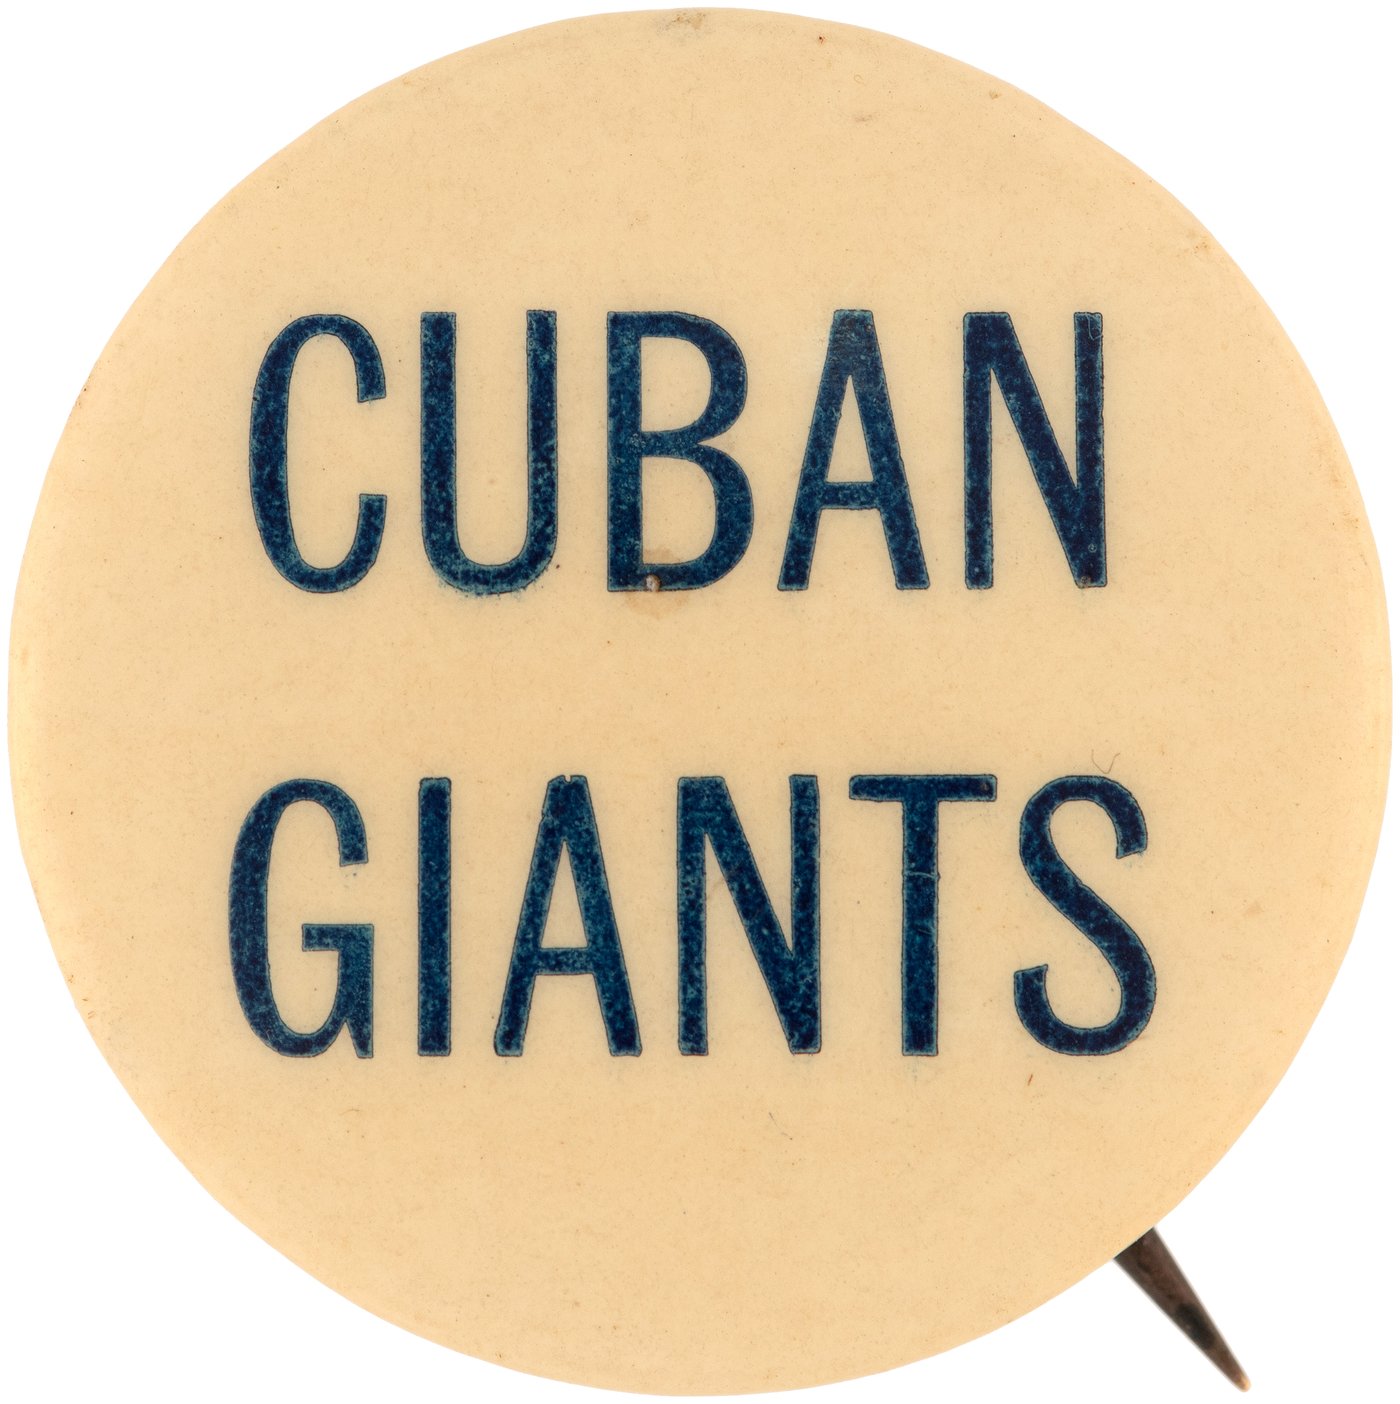 Cuba Baseball team - Cuba Baseball - Pin